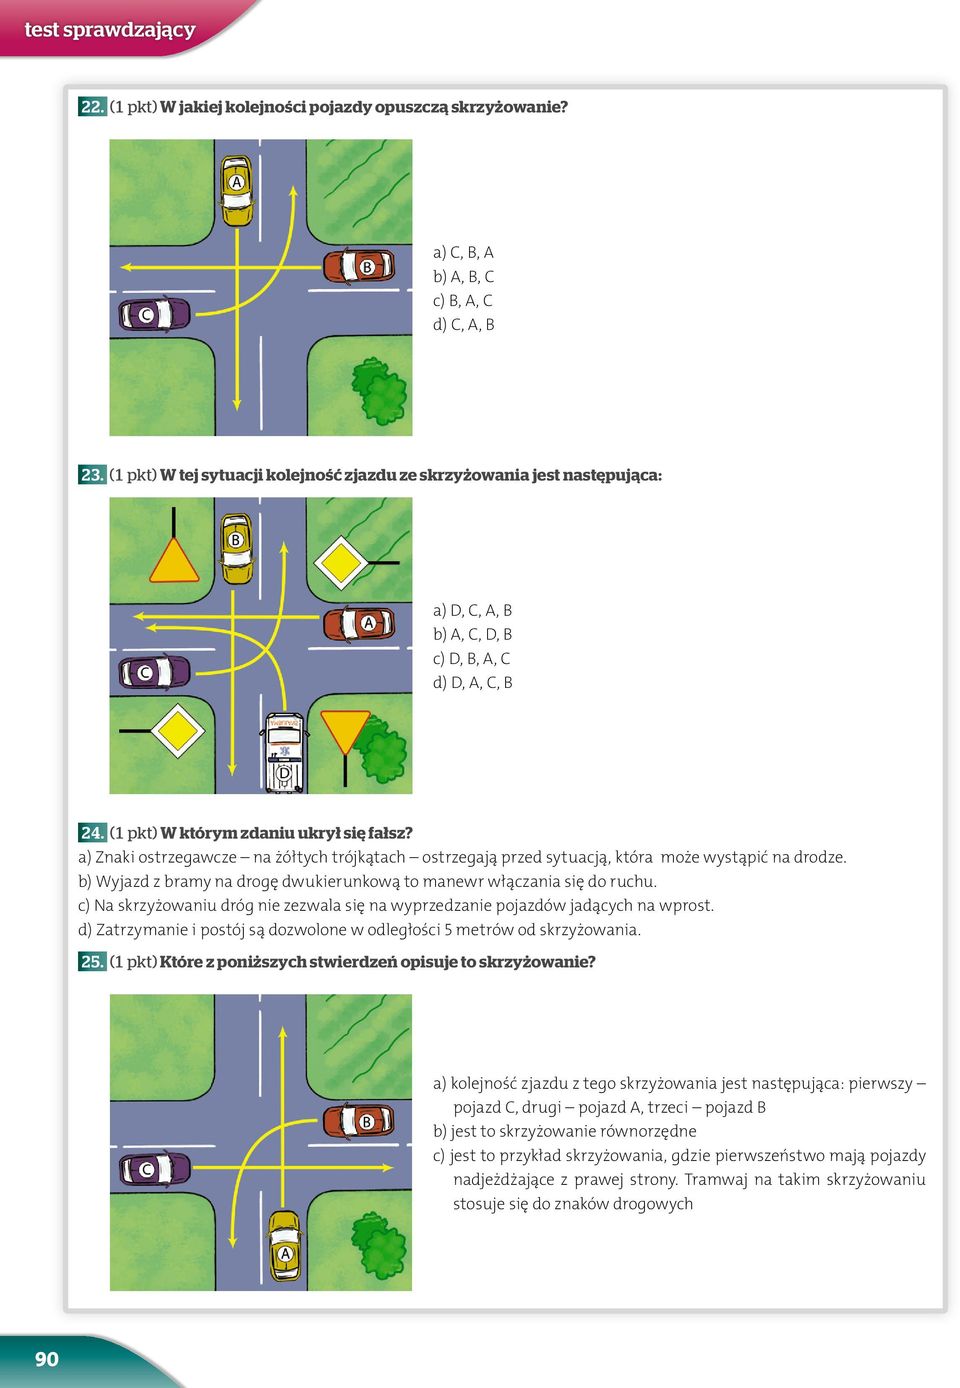 a) Znaki ostrzegawcze na żółtych trójkątach ostrzegają przed sytuacją, która może wystąpić na drodze. b) Wyjazd z bramy na drogę dwukierunkową to manewr włączania się do ruchu.